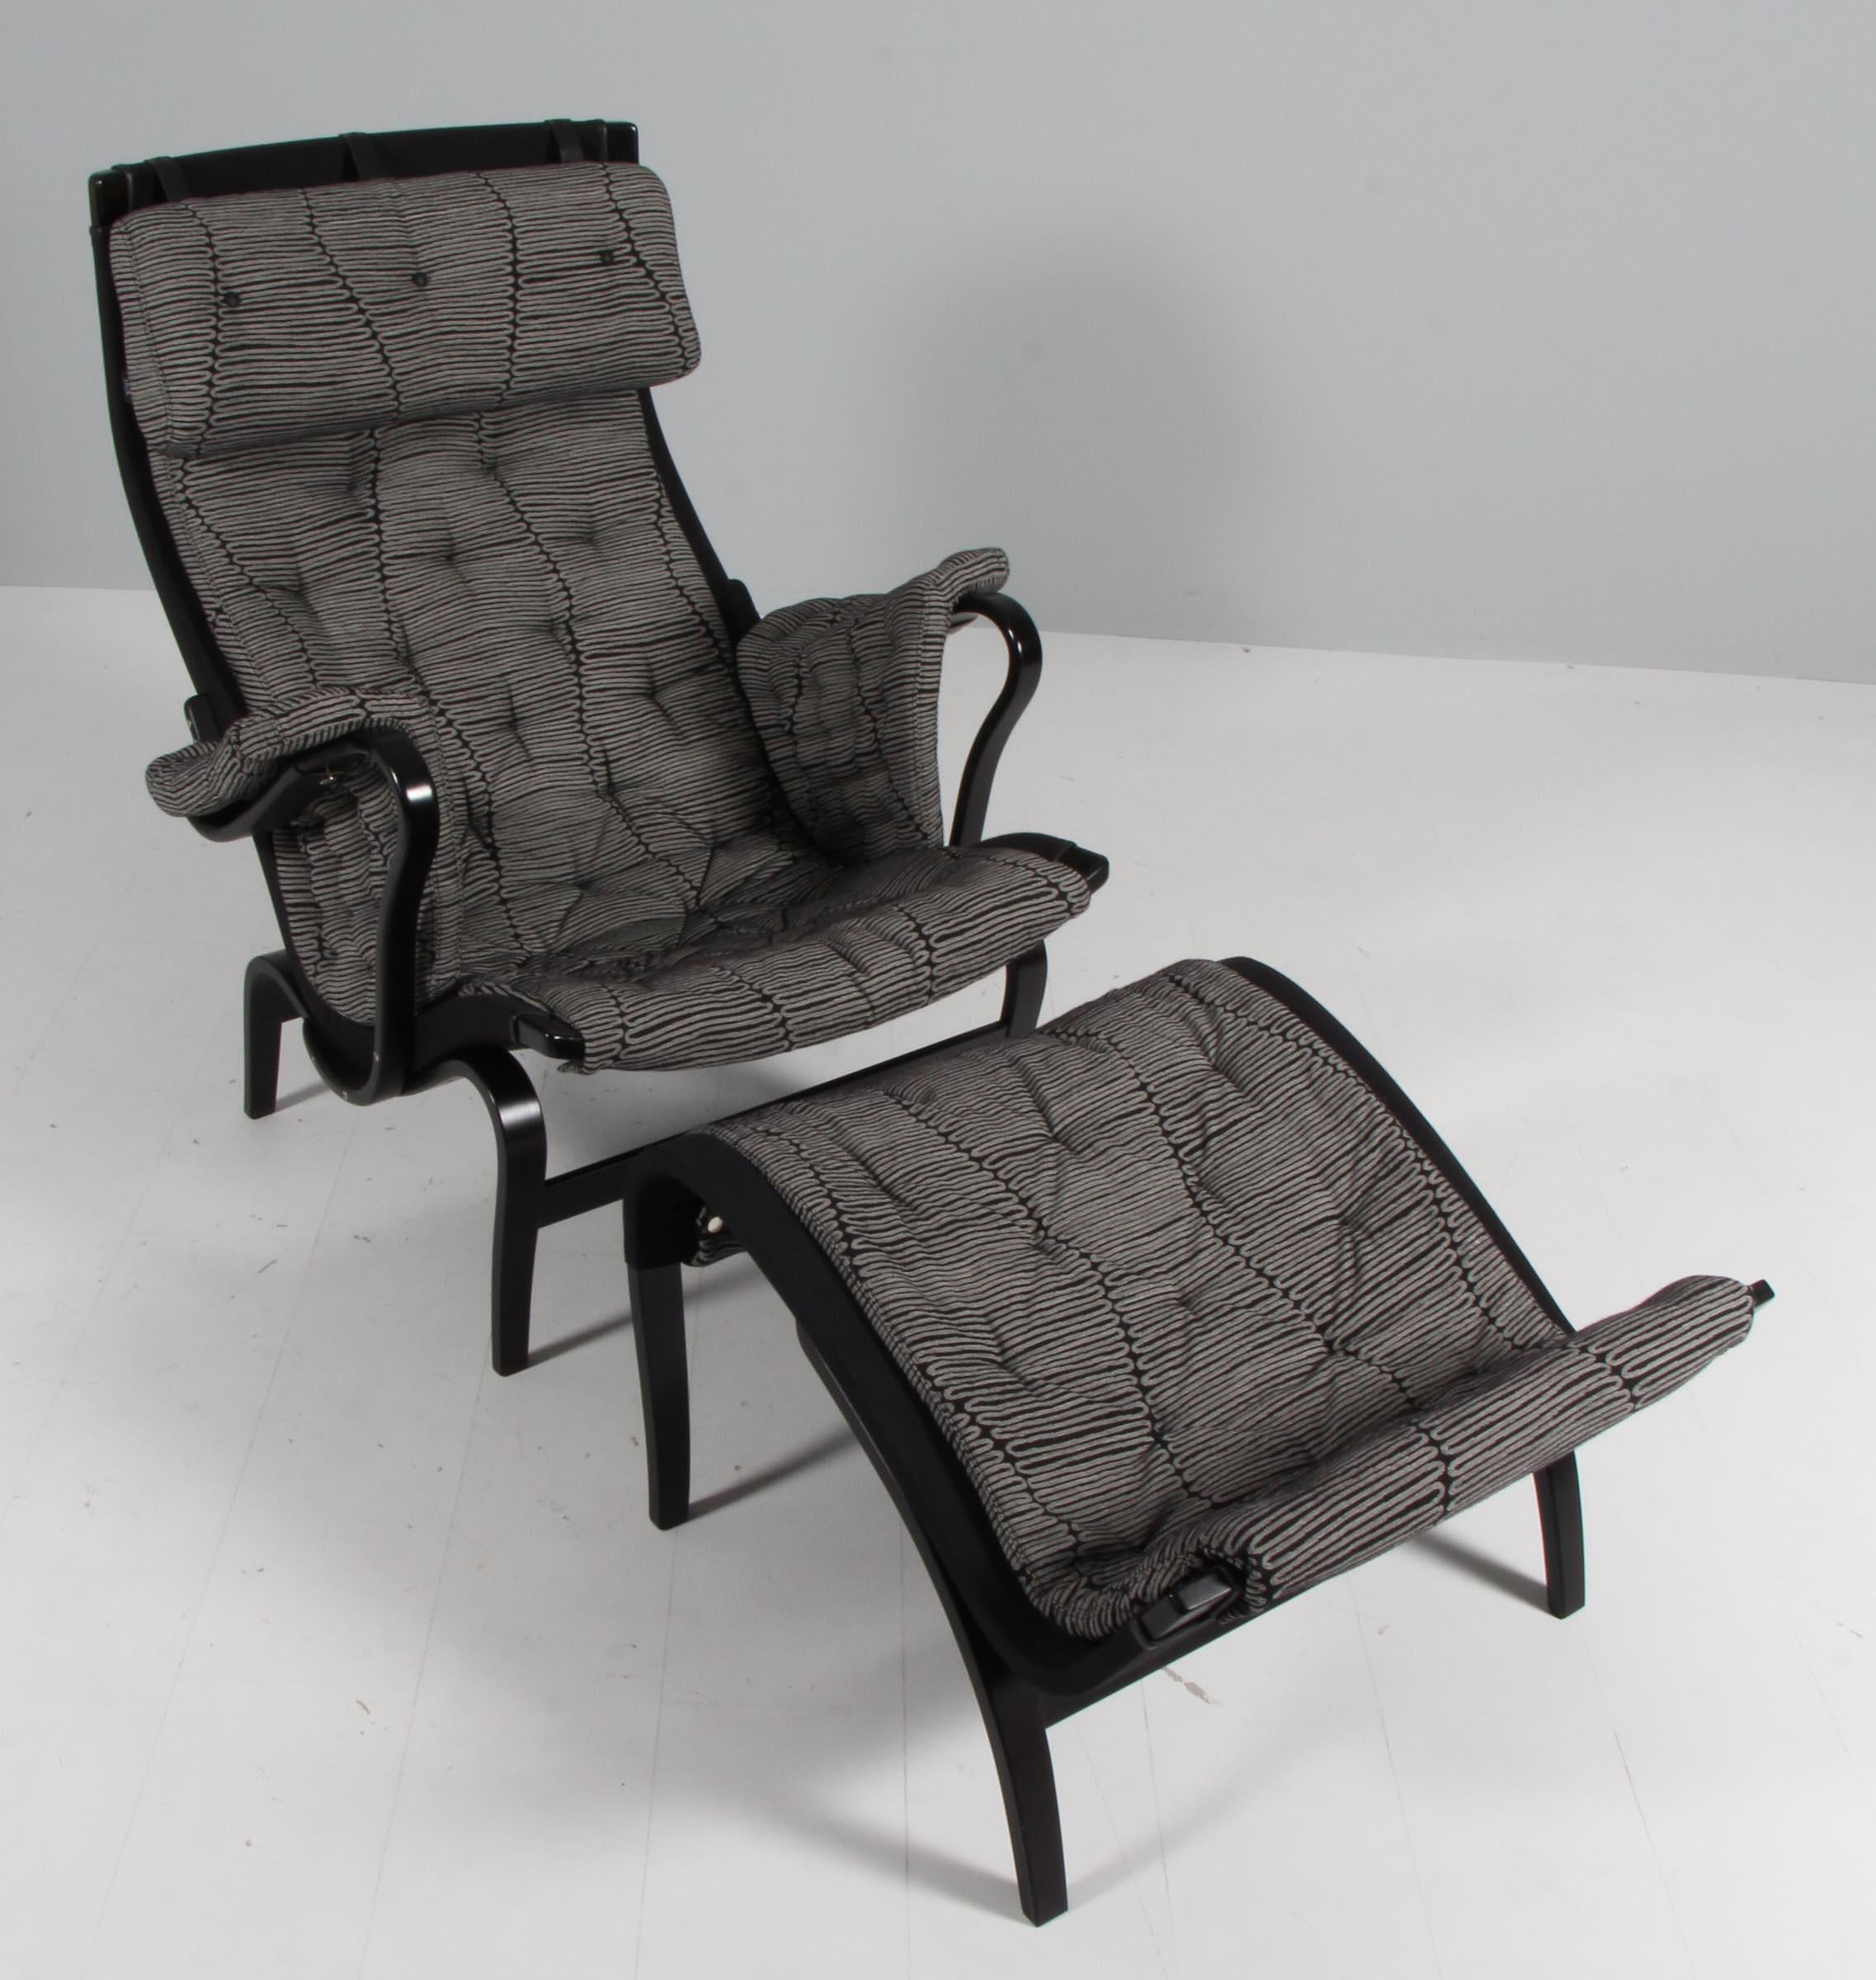 Bruno Mathsson Pernilla lounge chair with ottoman, original upholstery in fabric.

Cadre en hêtre laqué noir.

Fabriqué par DUX.

Il s'agit d'une édition spéciale célébrant le 100e anniversaire de Bruno Mathsson.